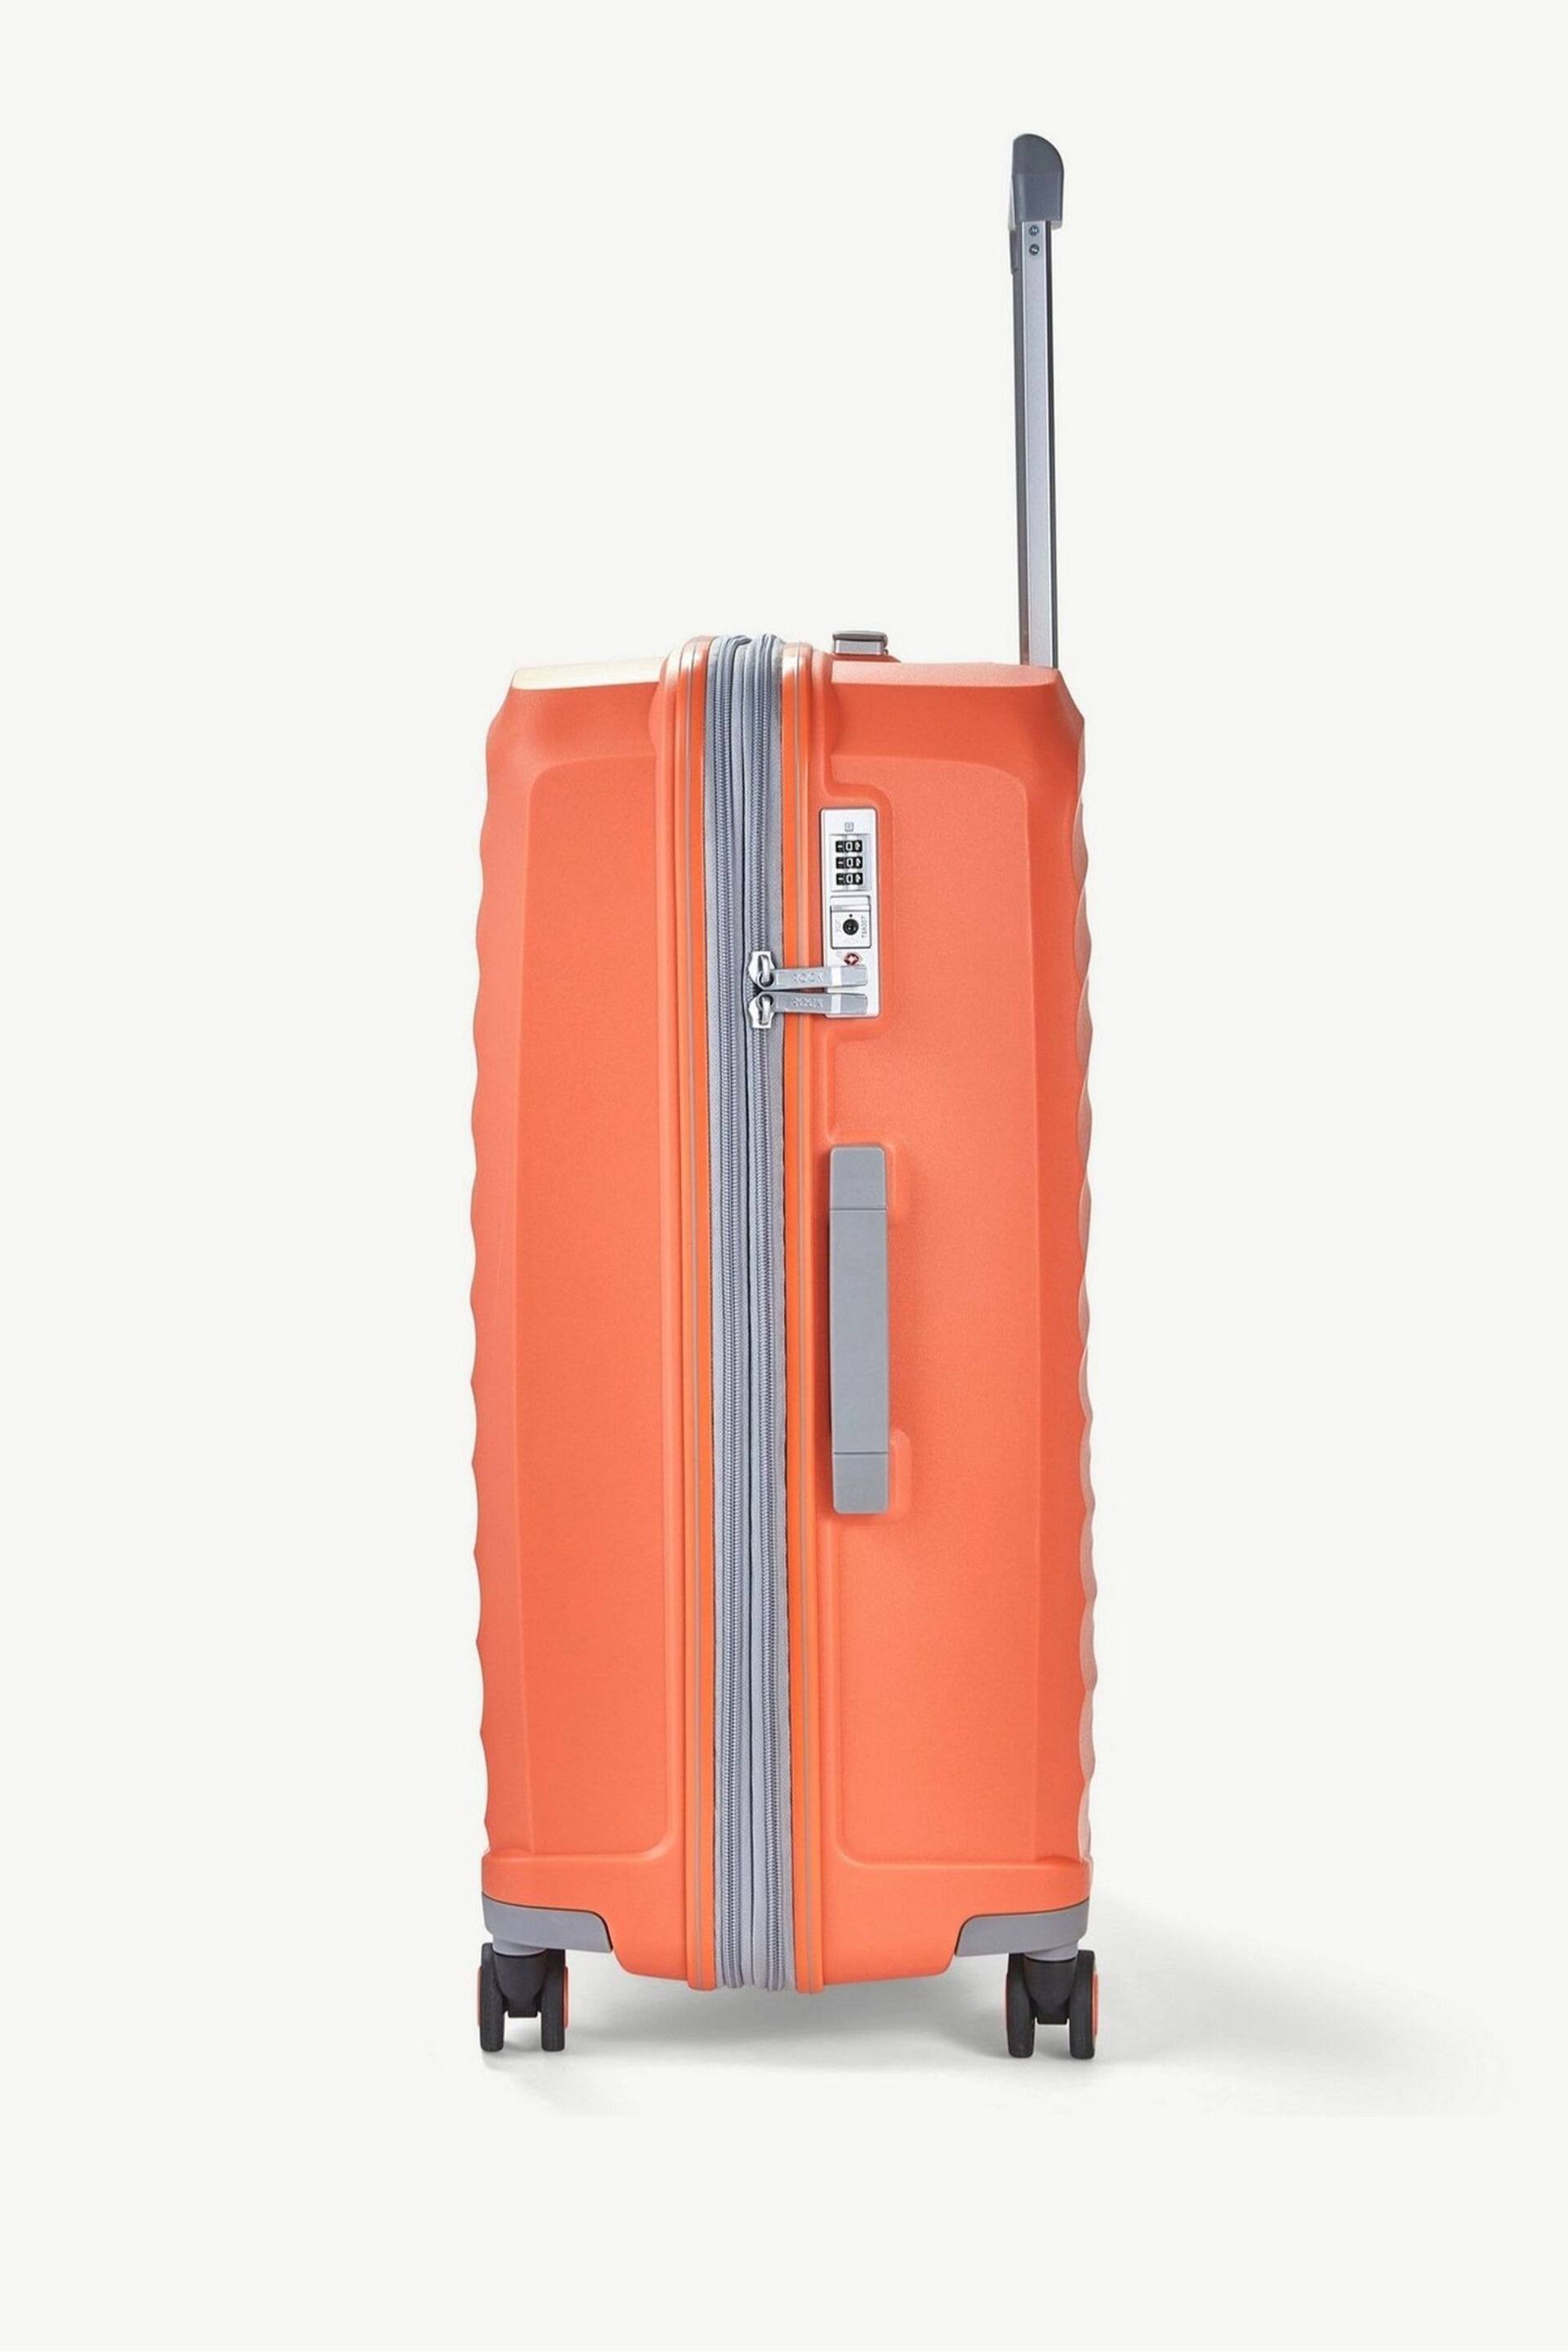 Rock Luggage Sunwave Medium Suitcase - Image 3 of 7